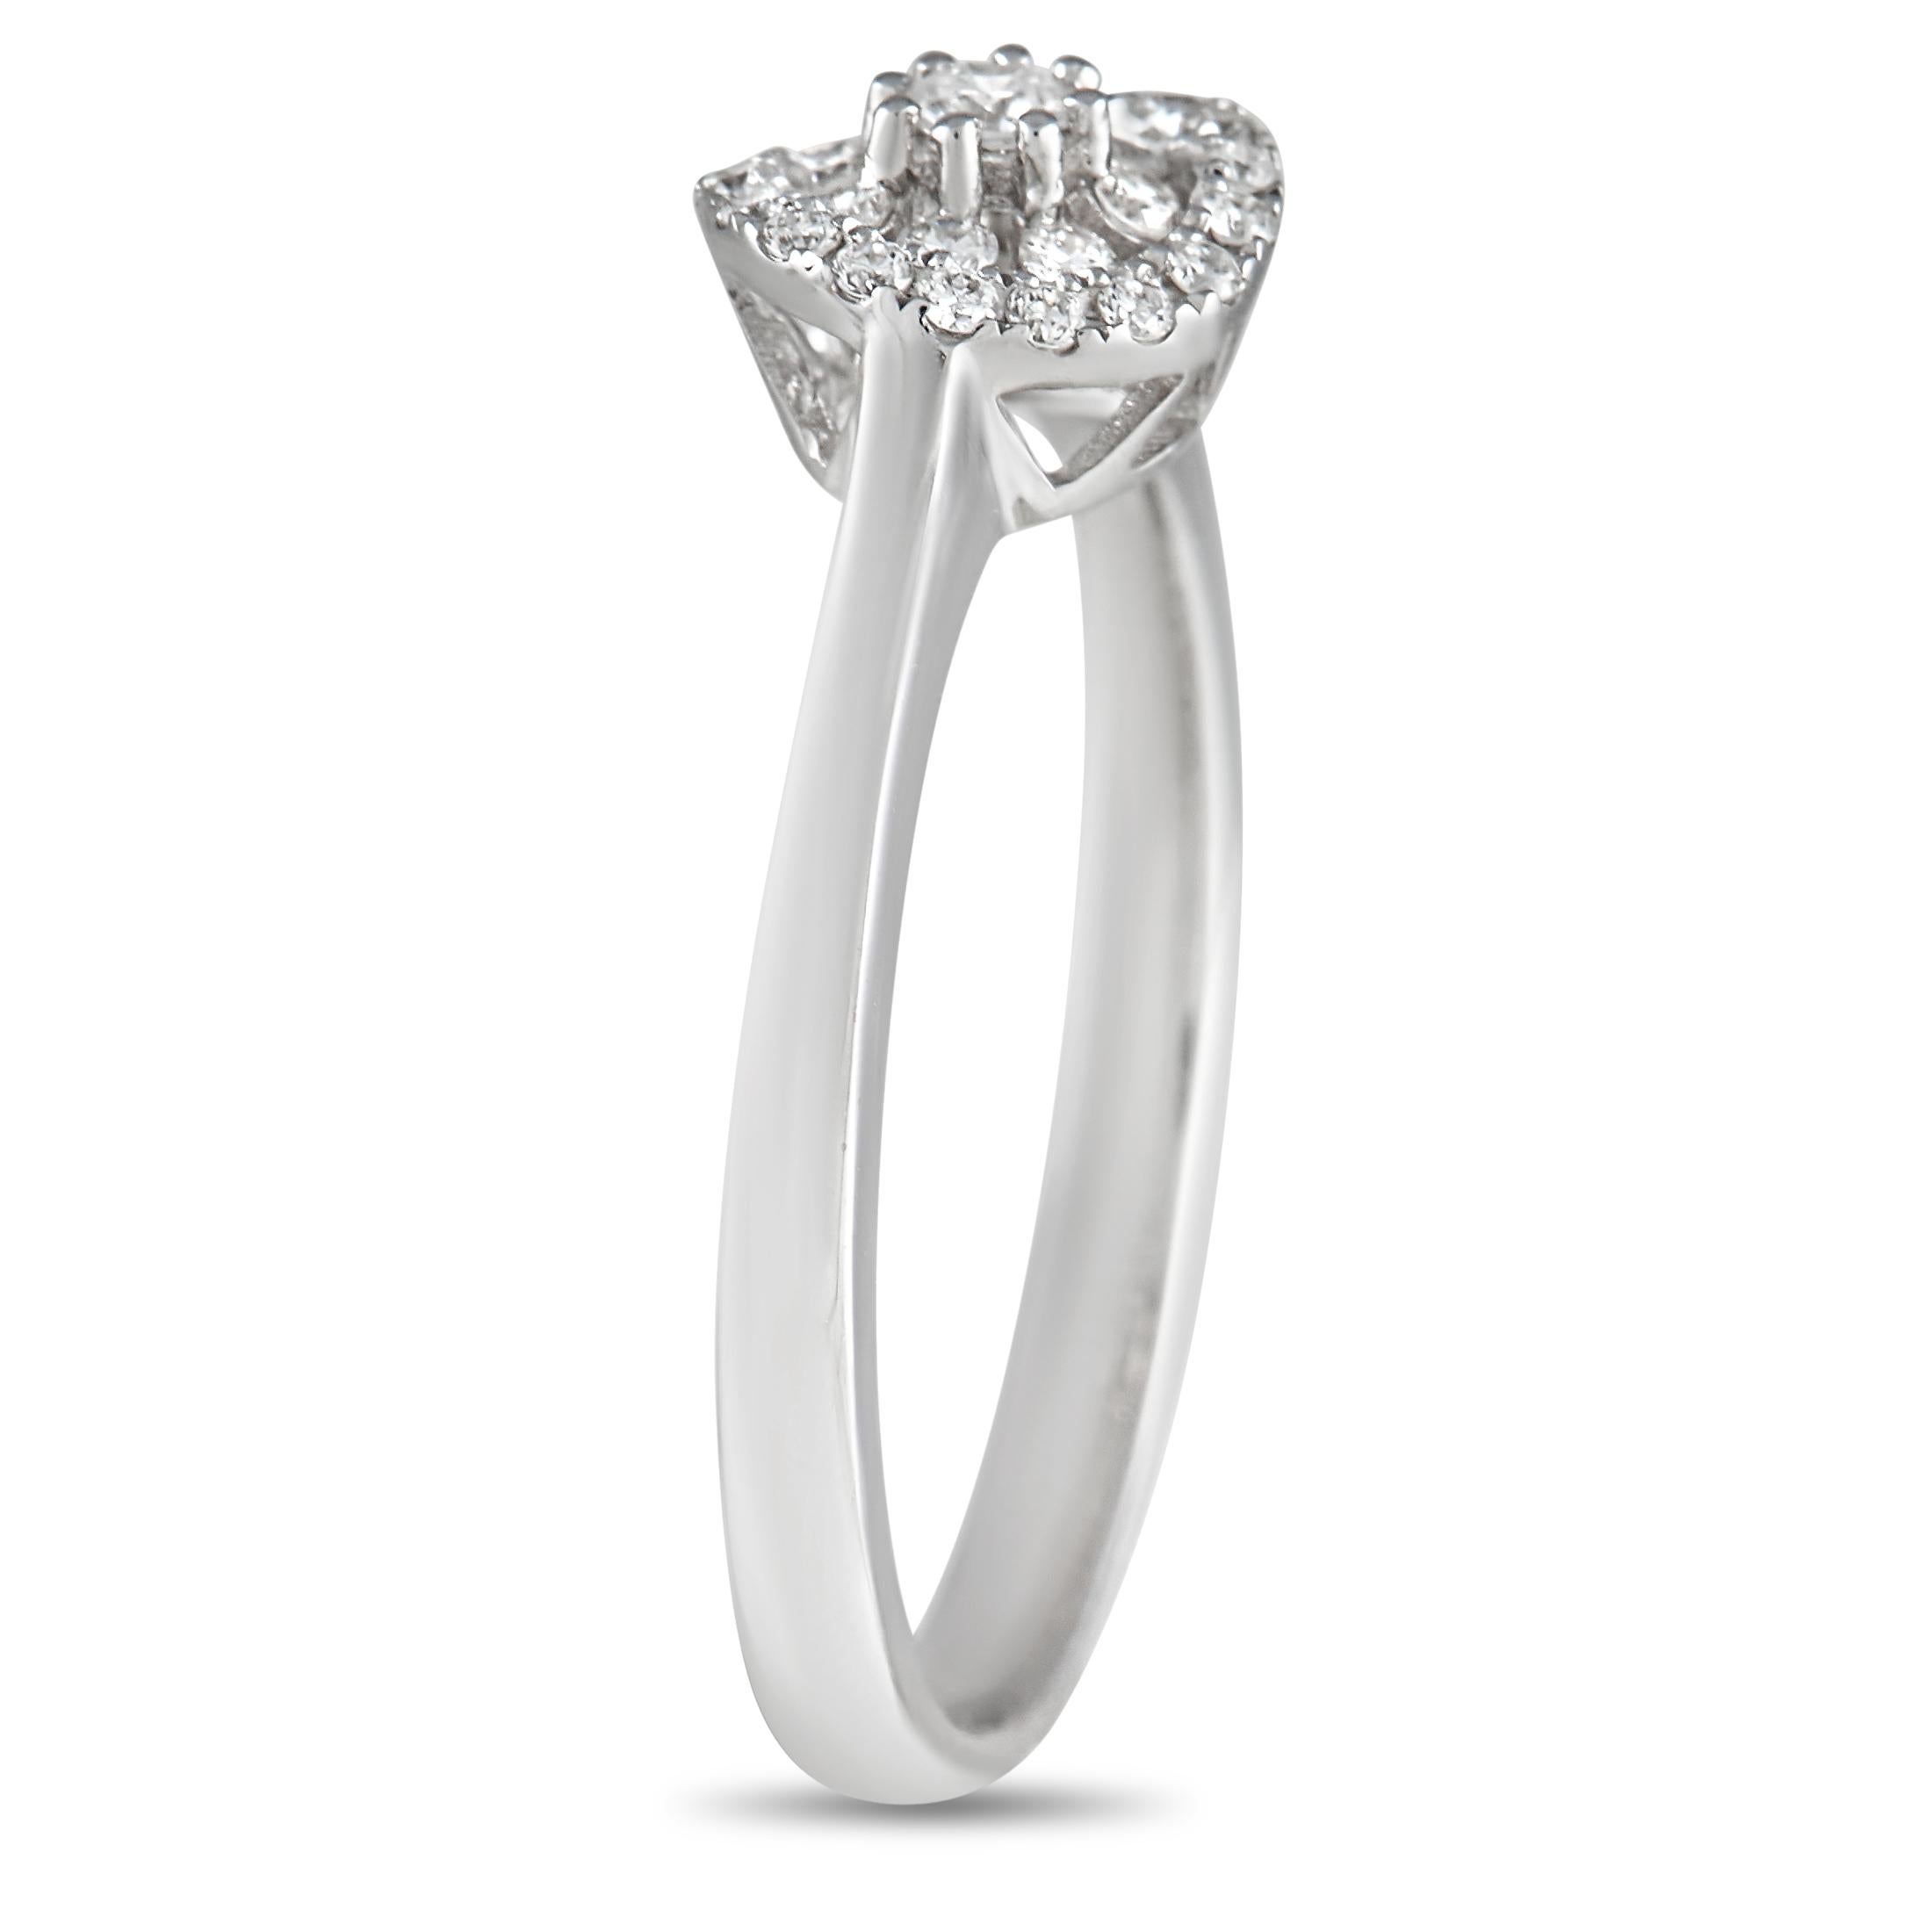 Une bague qui offre une présence exquise au doigt. Cette pièce de Piero Milano présente un anneau en or blanc de 1 mm surmonté d'une grappe de diamants d'inspiration florale. La hauteur du sommet est de 5 mm et les dimensions du sommet sont de 17 mm